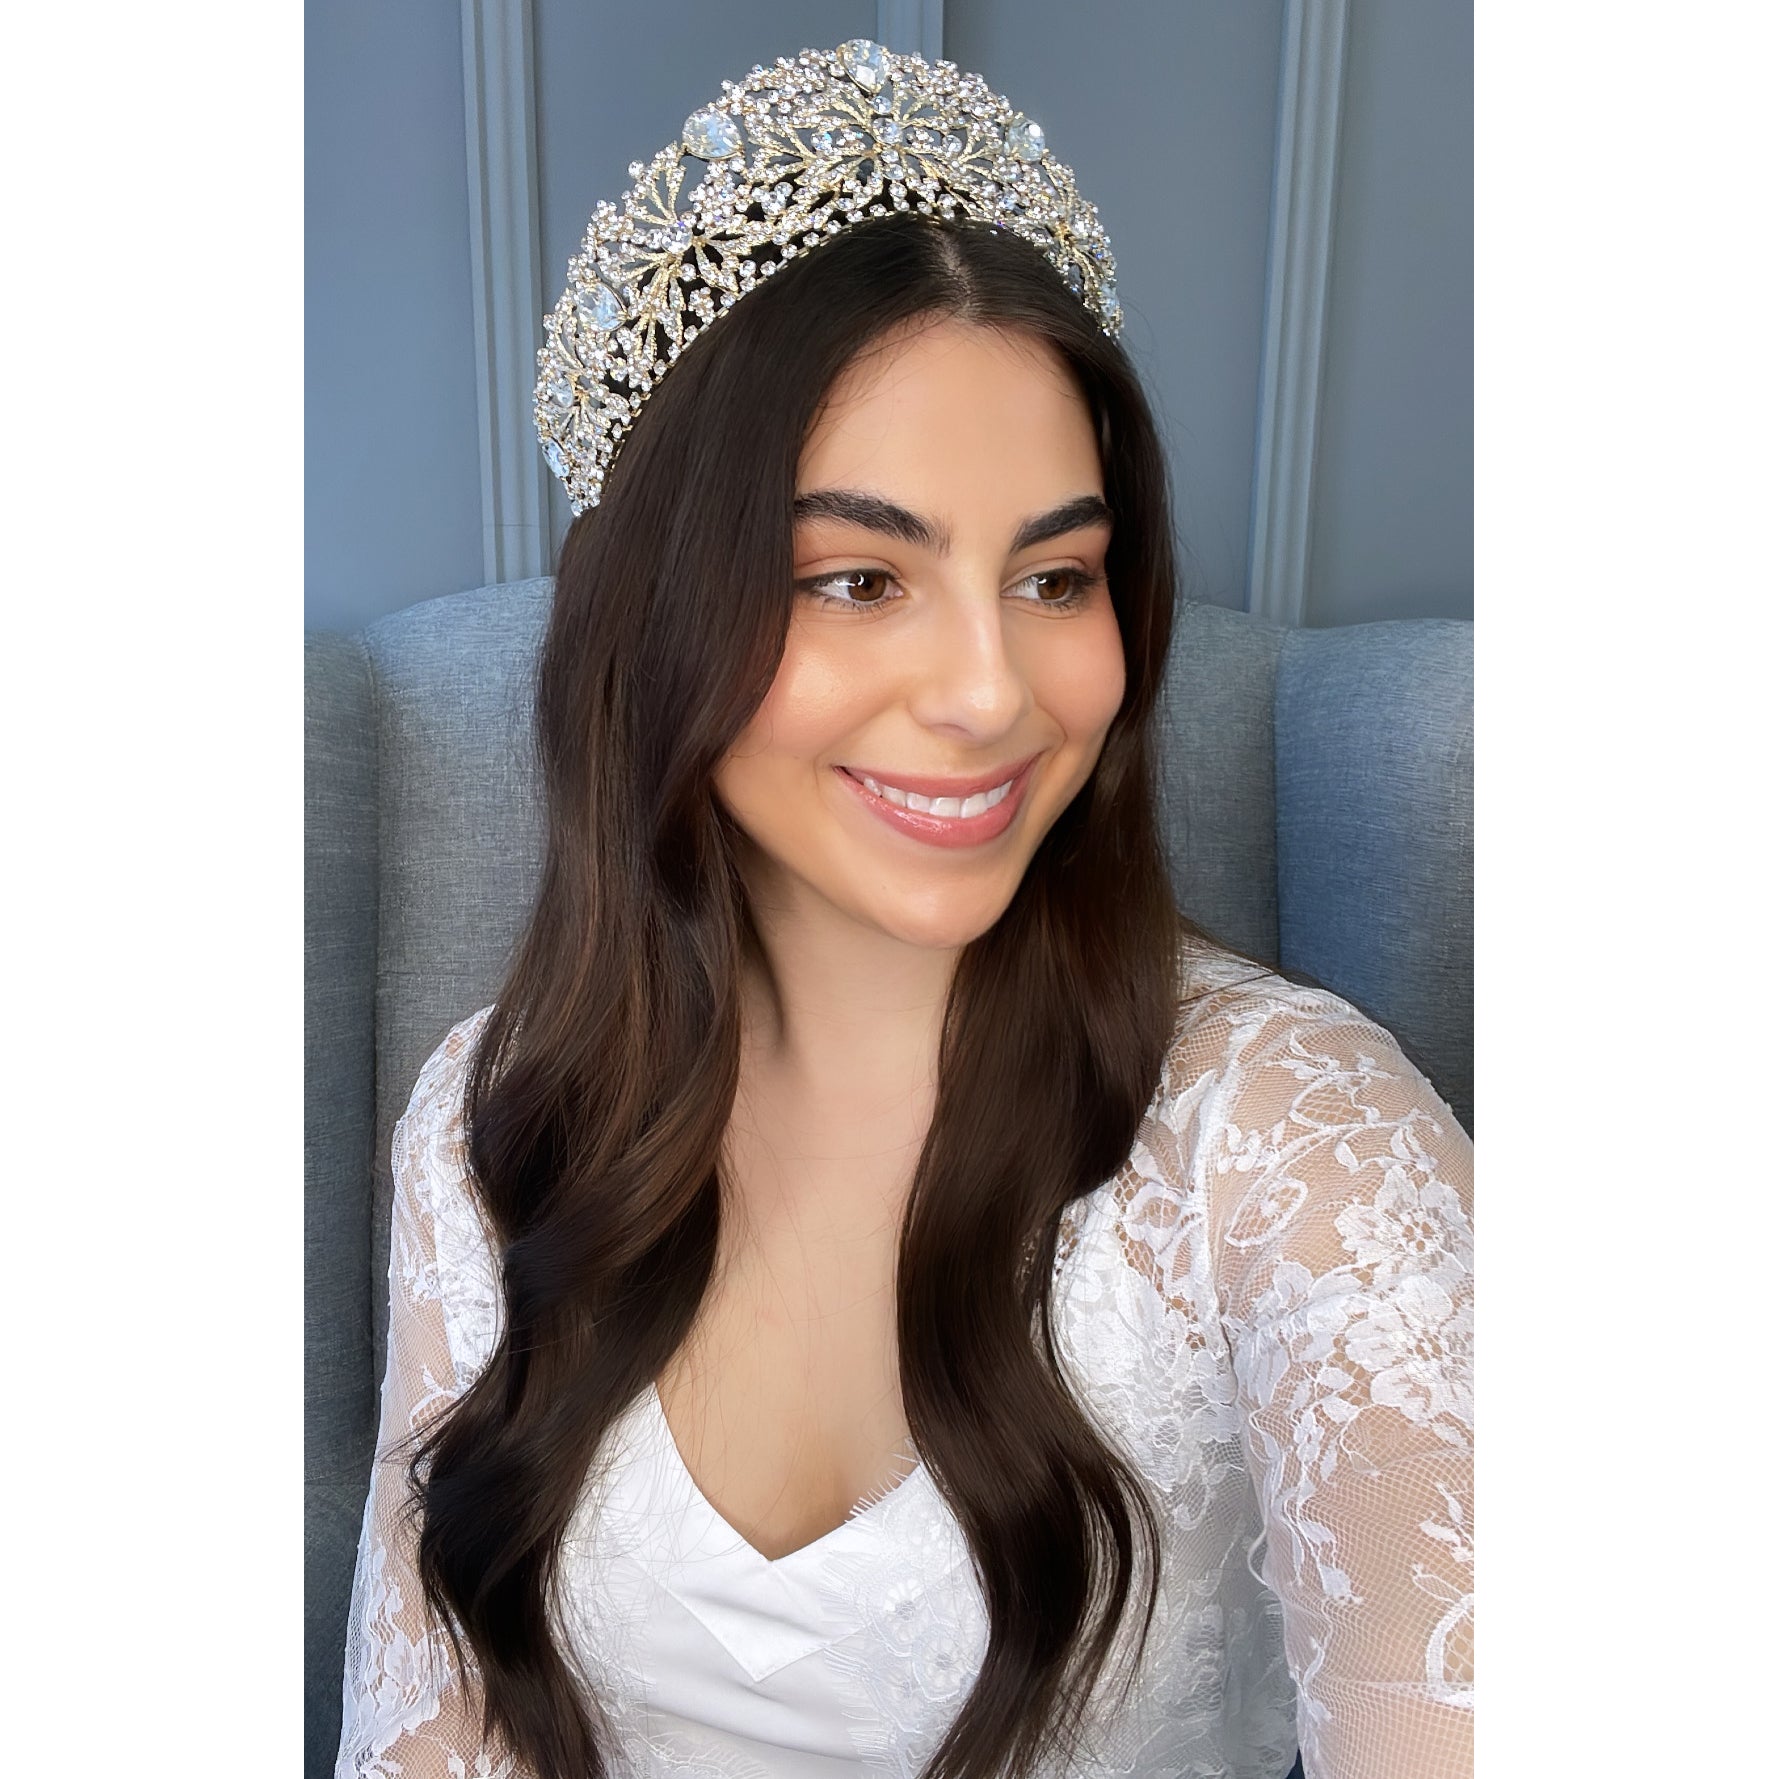 Milica Bridal Crown Hair Accessories - Tiara & Crown  Gold  